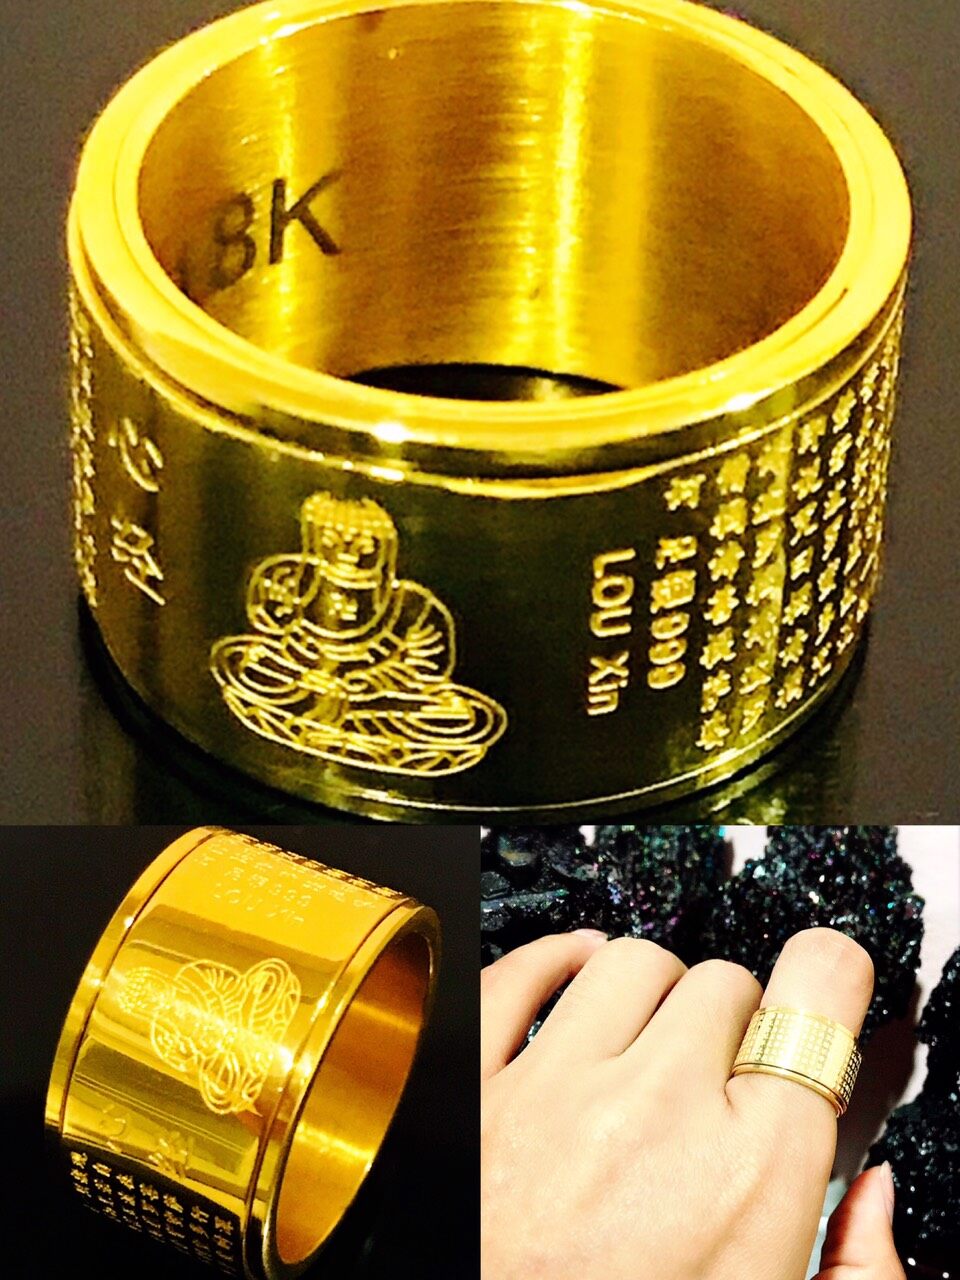 แหวนหทัยสูตร แหวนหัวใจพระสูตร แหวนหฤทัยสูตร แหวนพระสูตร แหวนนำโชค แหวนมงคล แหวนสีทอง แหวน ทิเบต พระคัมภีร์ แหวนพระ Sutra Ring, Buddha Ring